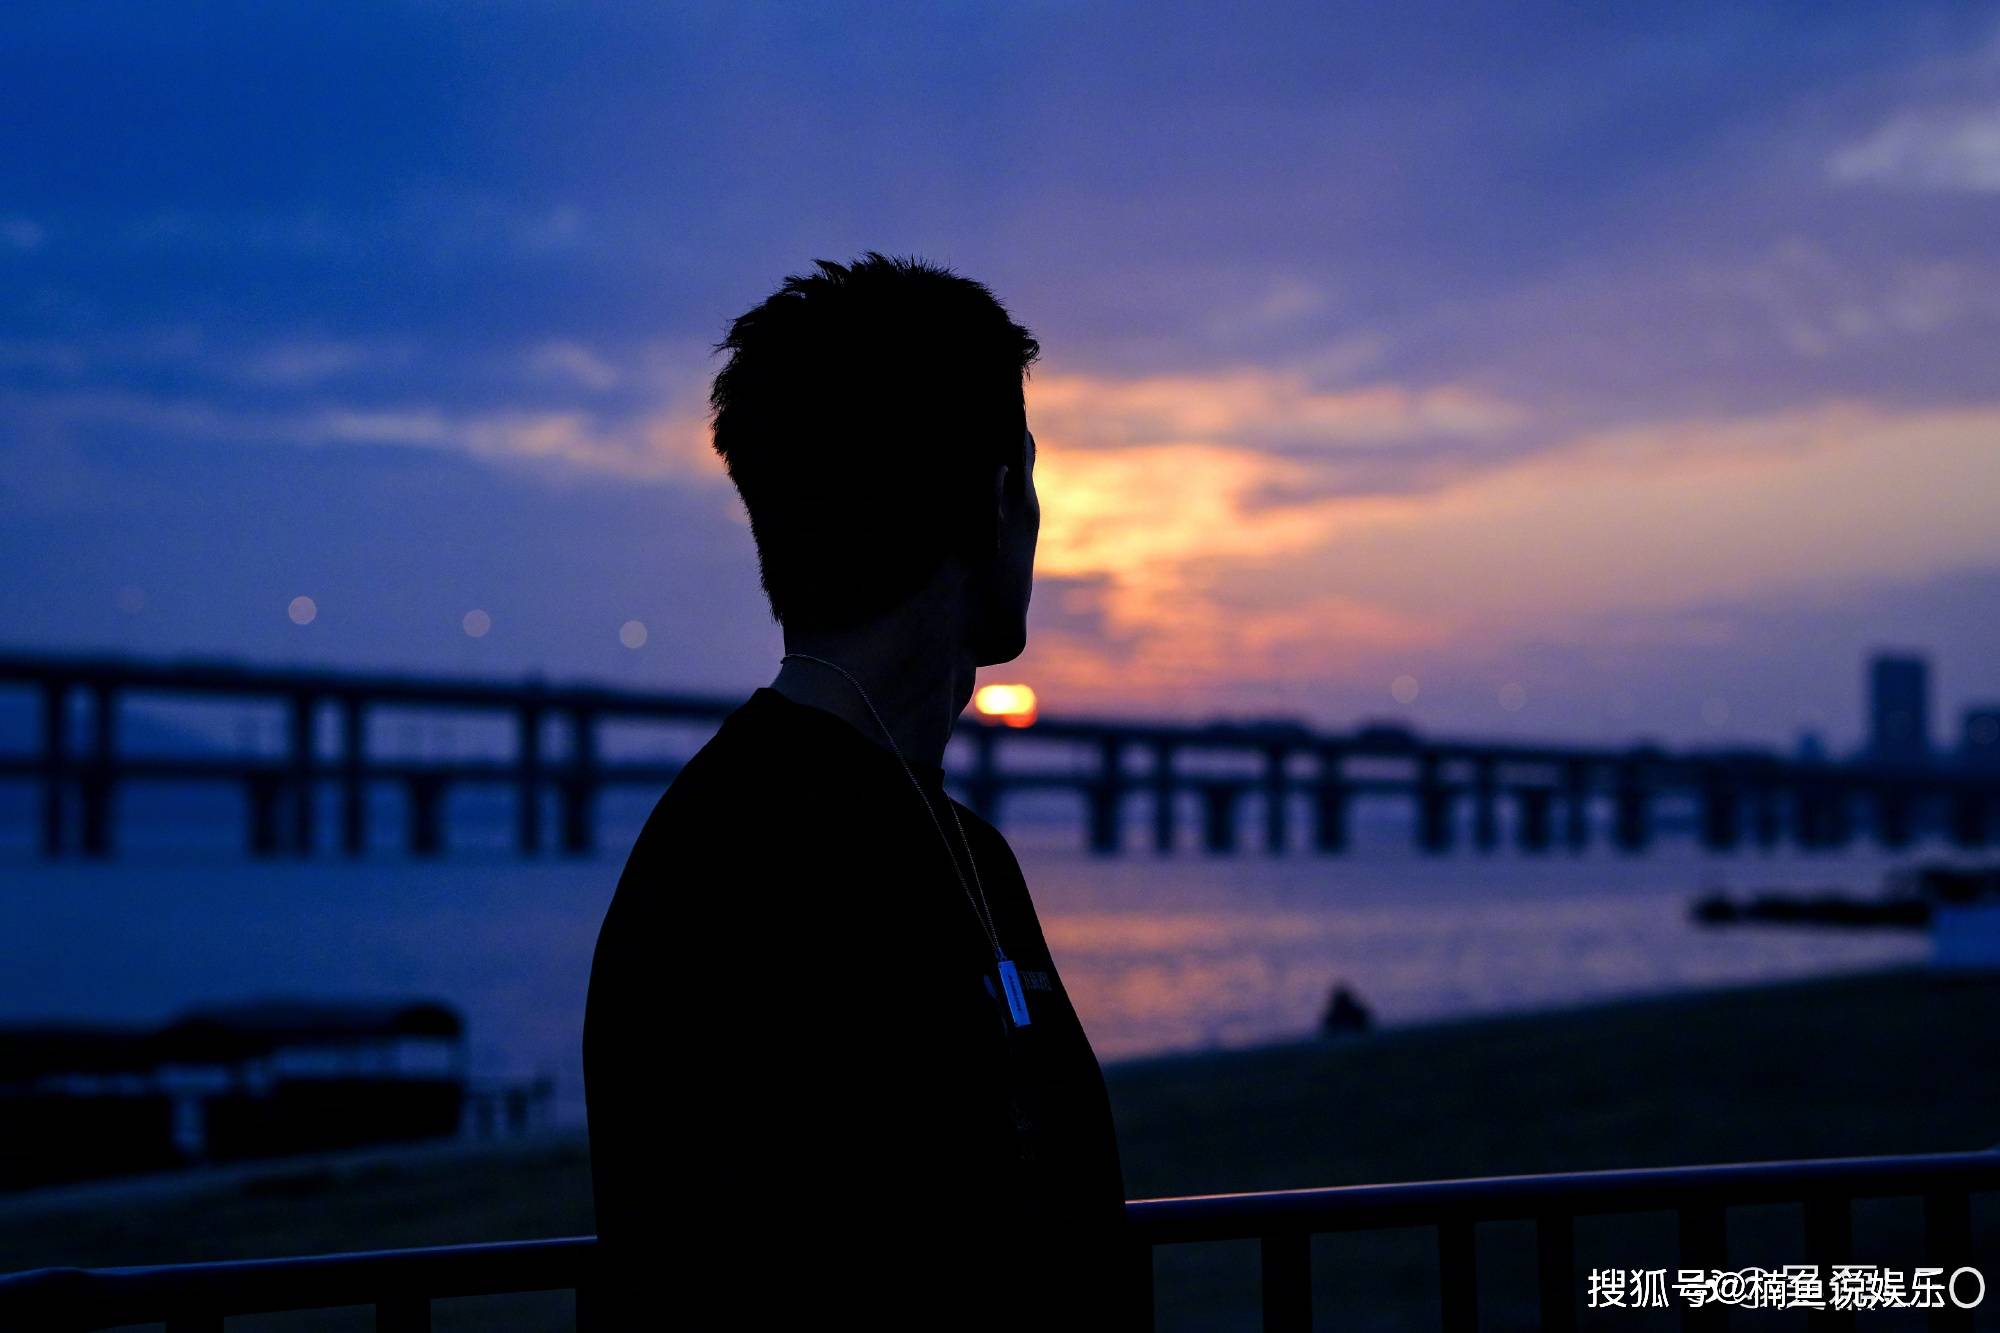 21岁吴磊晒海边落日照背影意境十足朝气蓬勃的少年感好喜欢